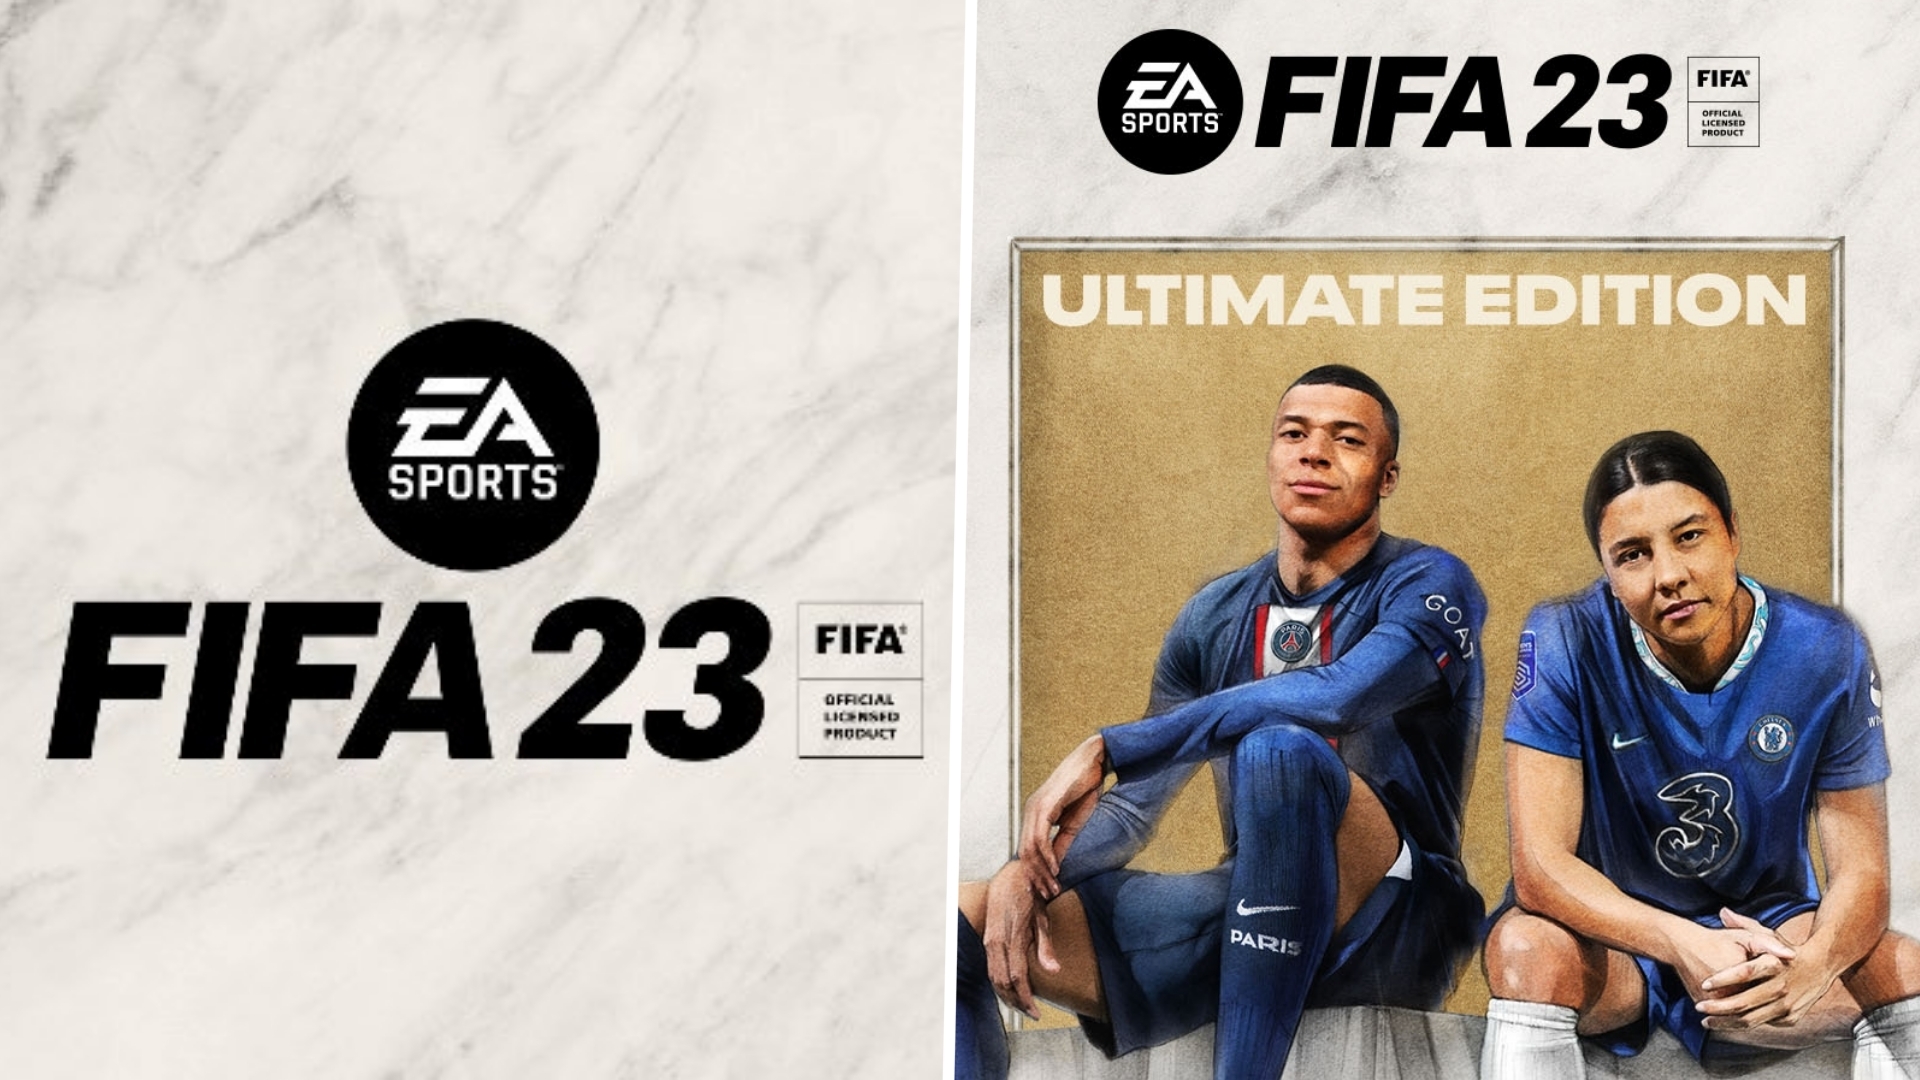 الاصدار الجديد من لعبة FIFA 23 فيفا موبايل 2023 بيتا